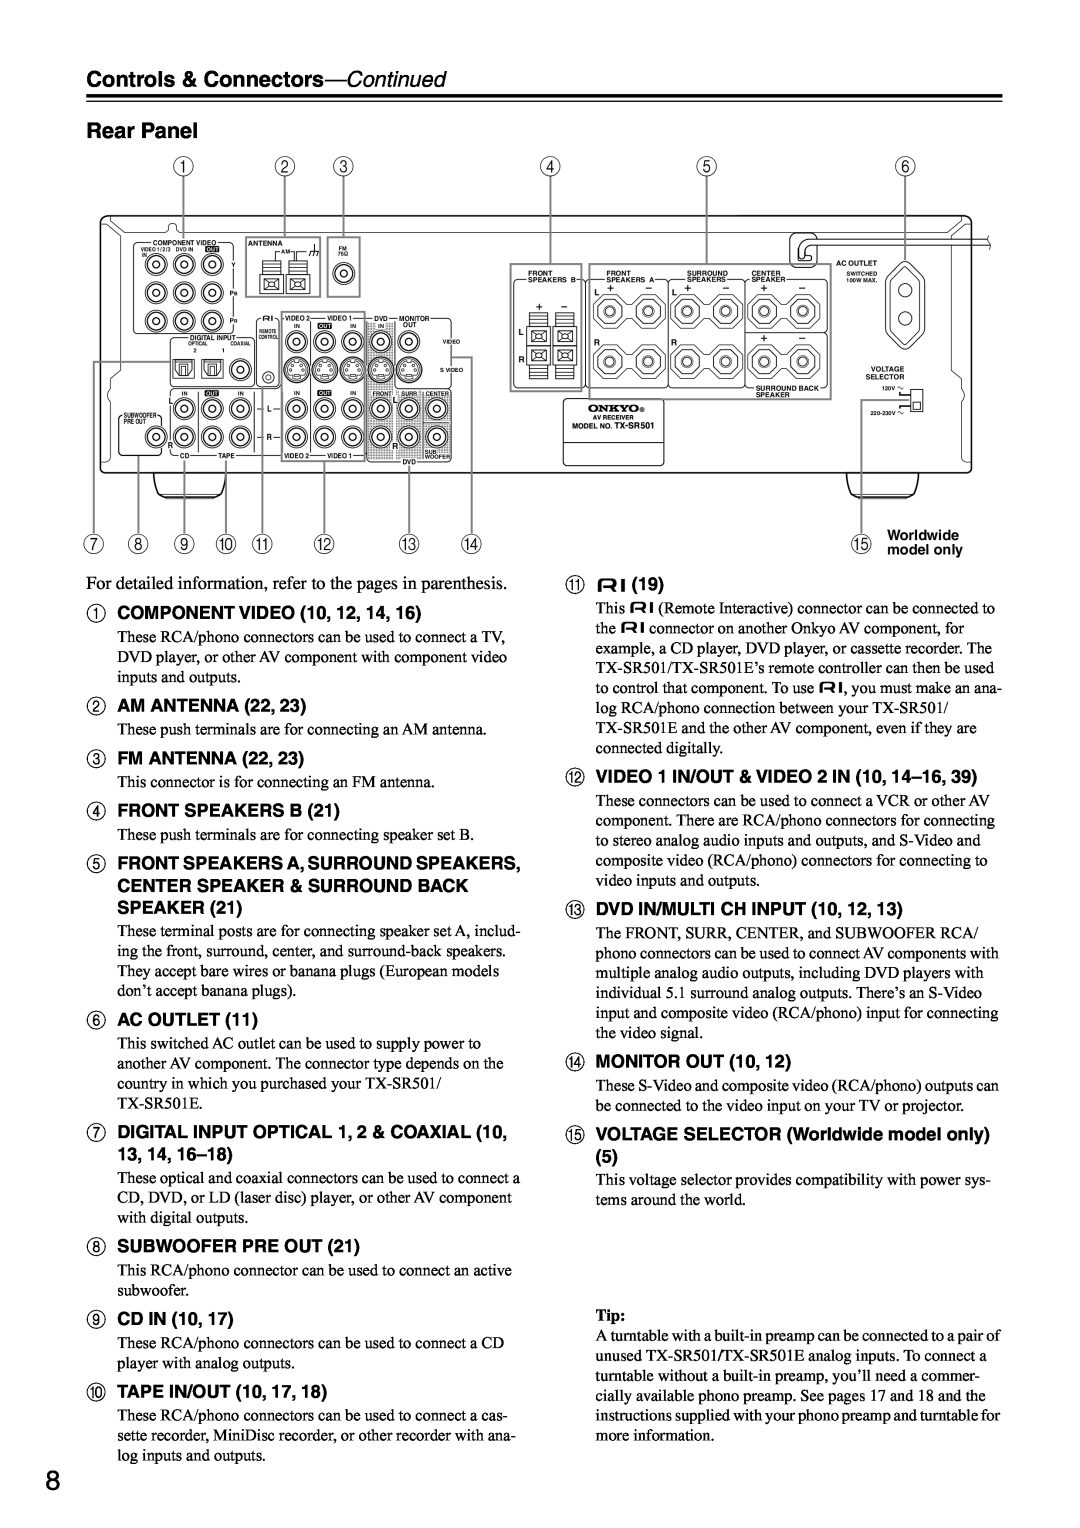 Onkyo TX-SR501E instruction manual Rear Panel, Controls & Connectors-Continued, 9 J K 